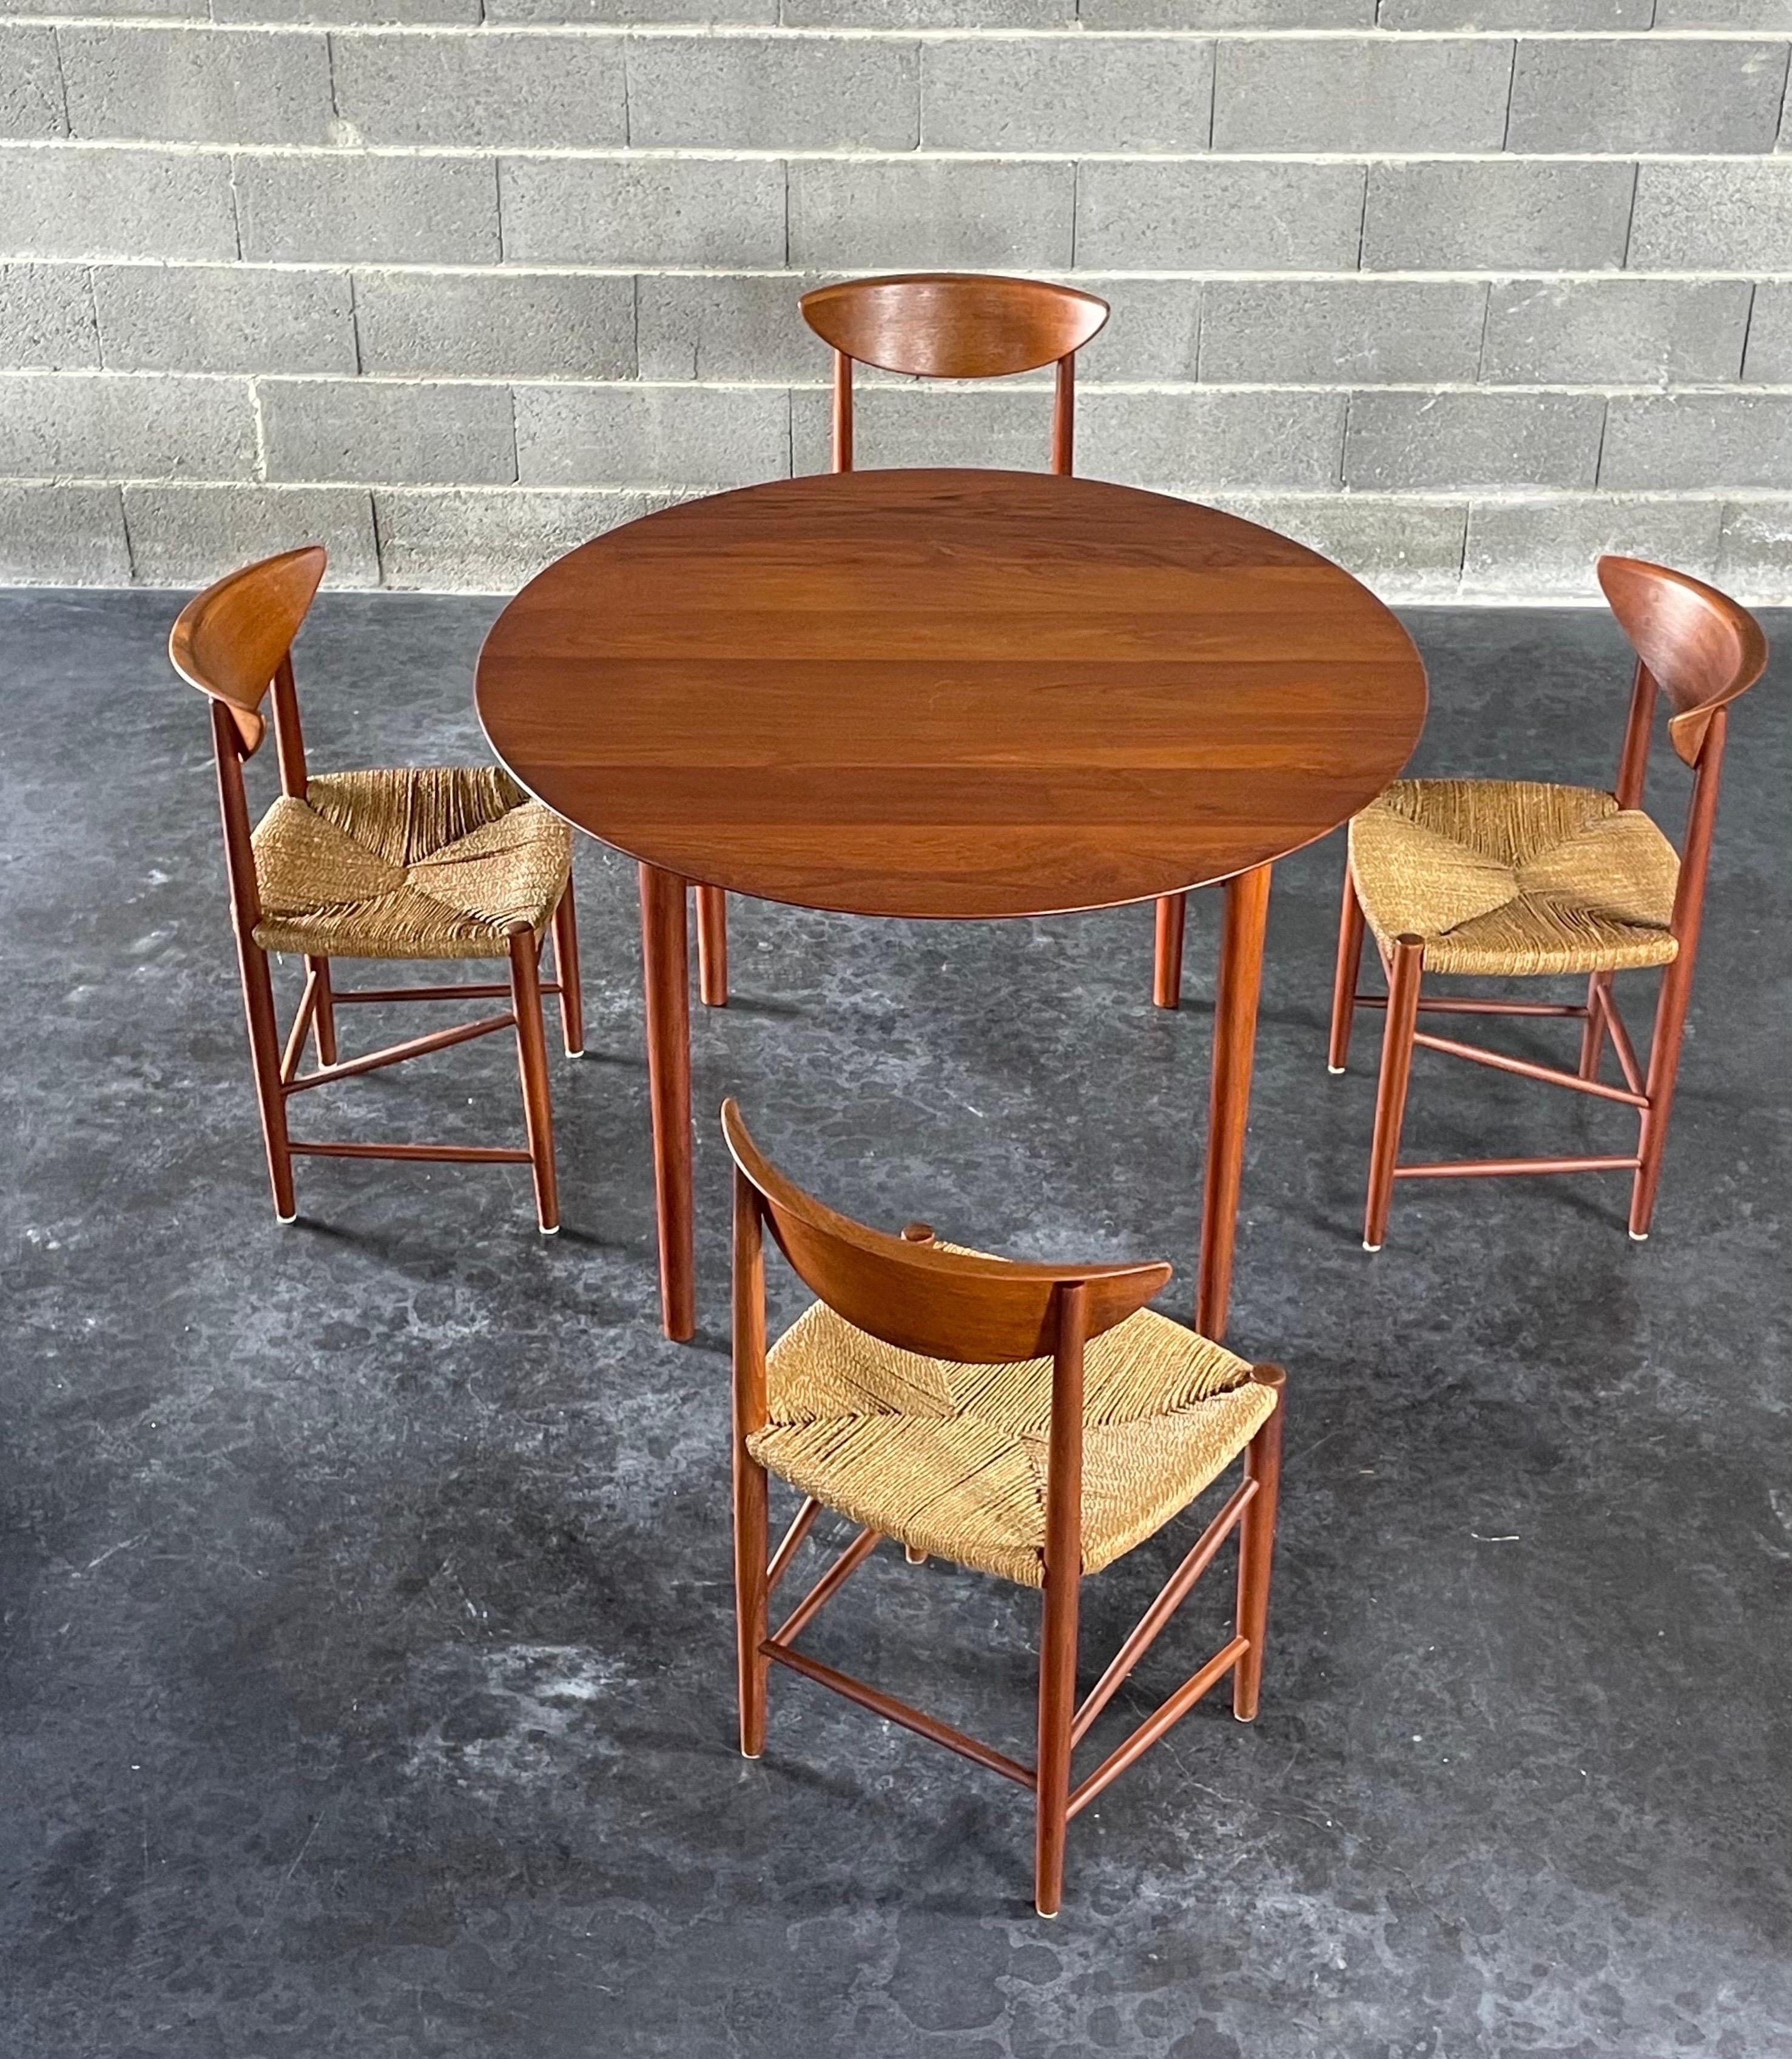 Une table de salle à manger modulaire créée par le duo de designers danois emblématiques Peter Hvidt et Orla Mølgaard Nielsen. Fabriqué au Danemark par France & Søn vers les années 1950. L'espace supplémentaire au milieu permet d'accueillir